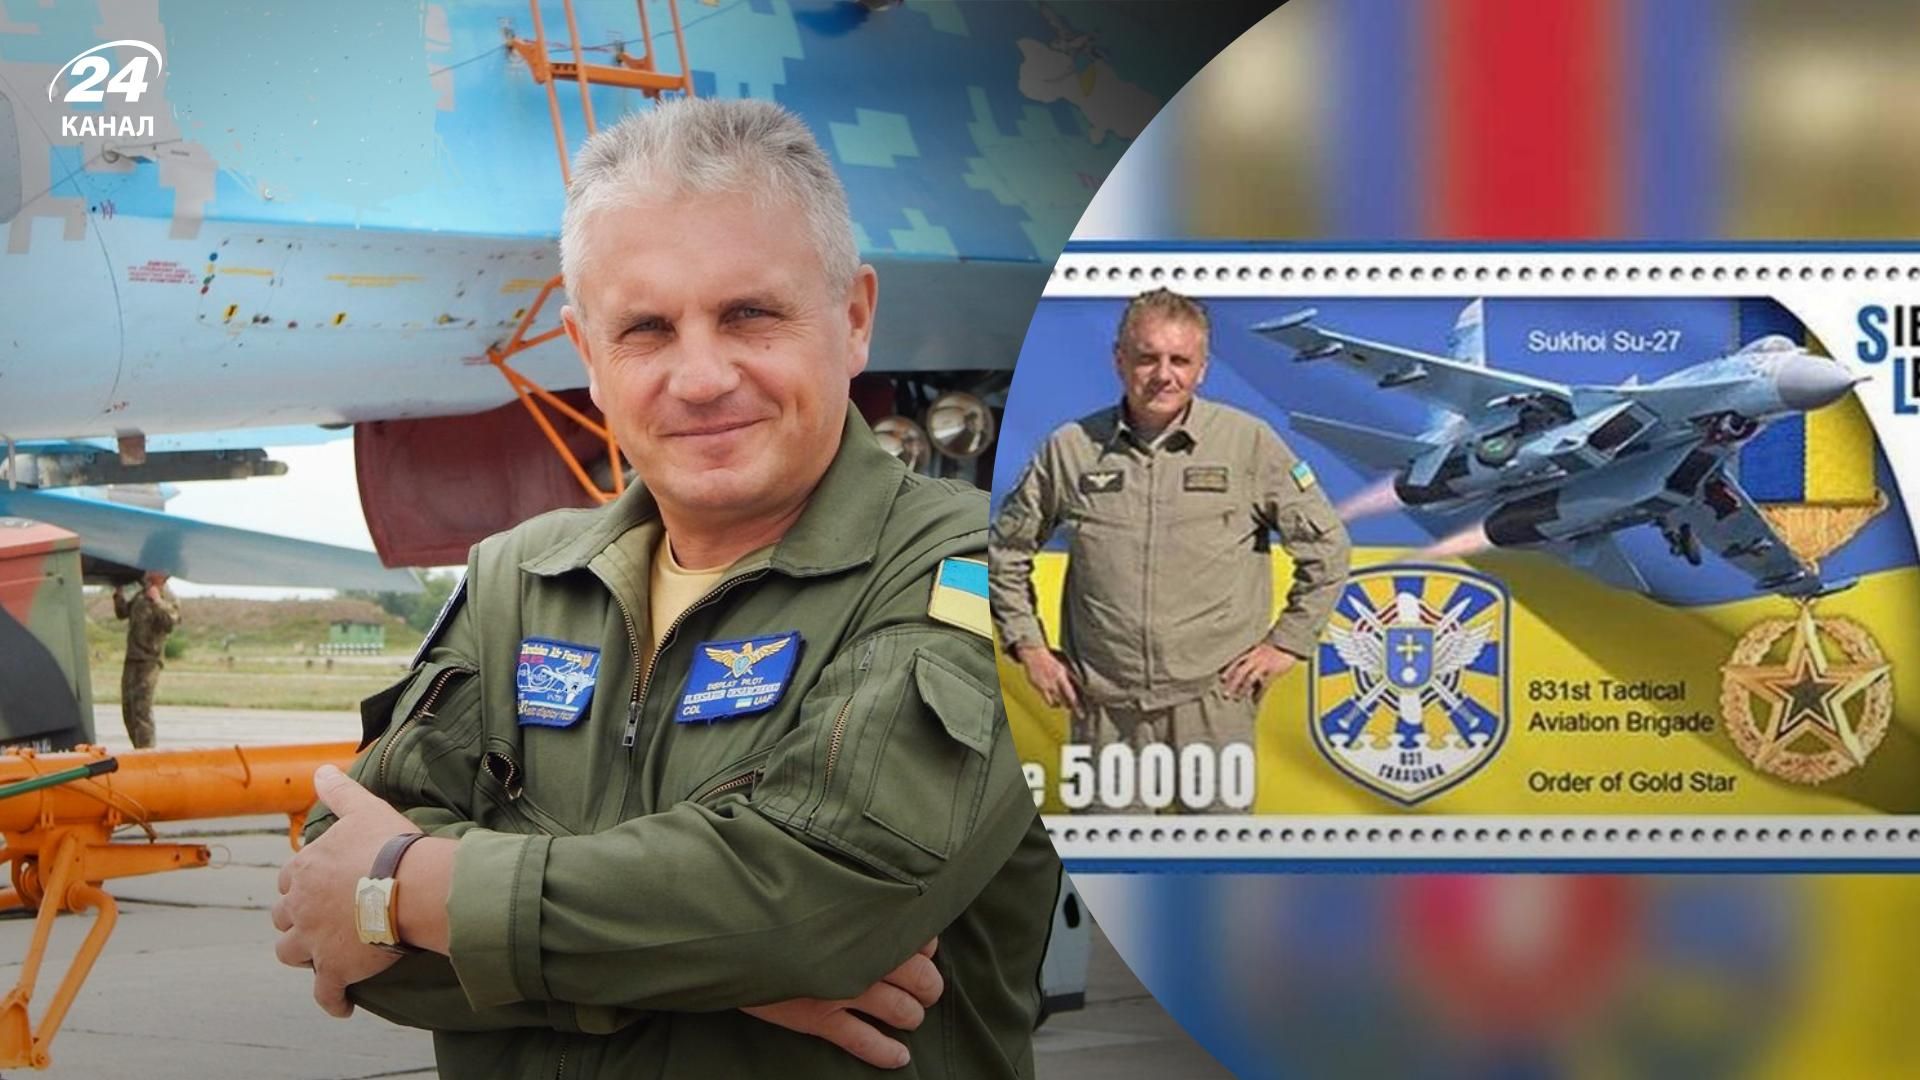 Пілоту Олександру Оксанченку присвятили серію марок у Сьєрра-Леоне